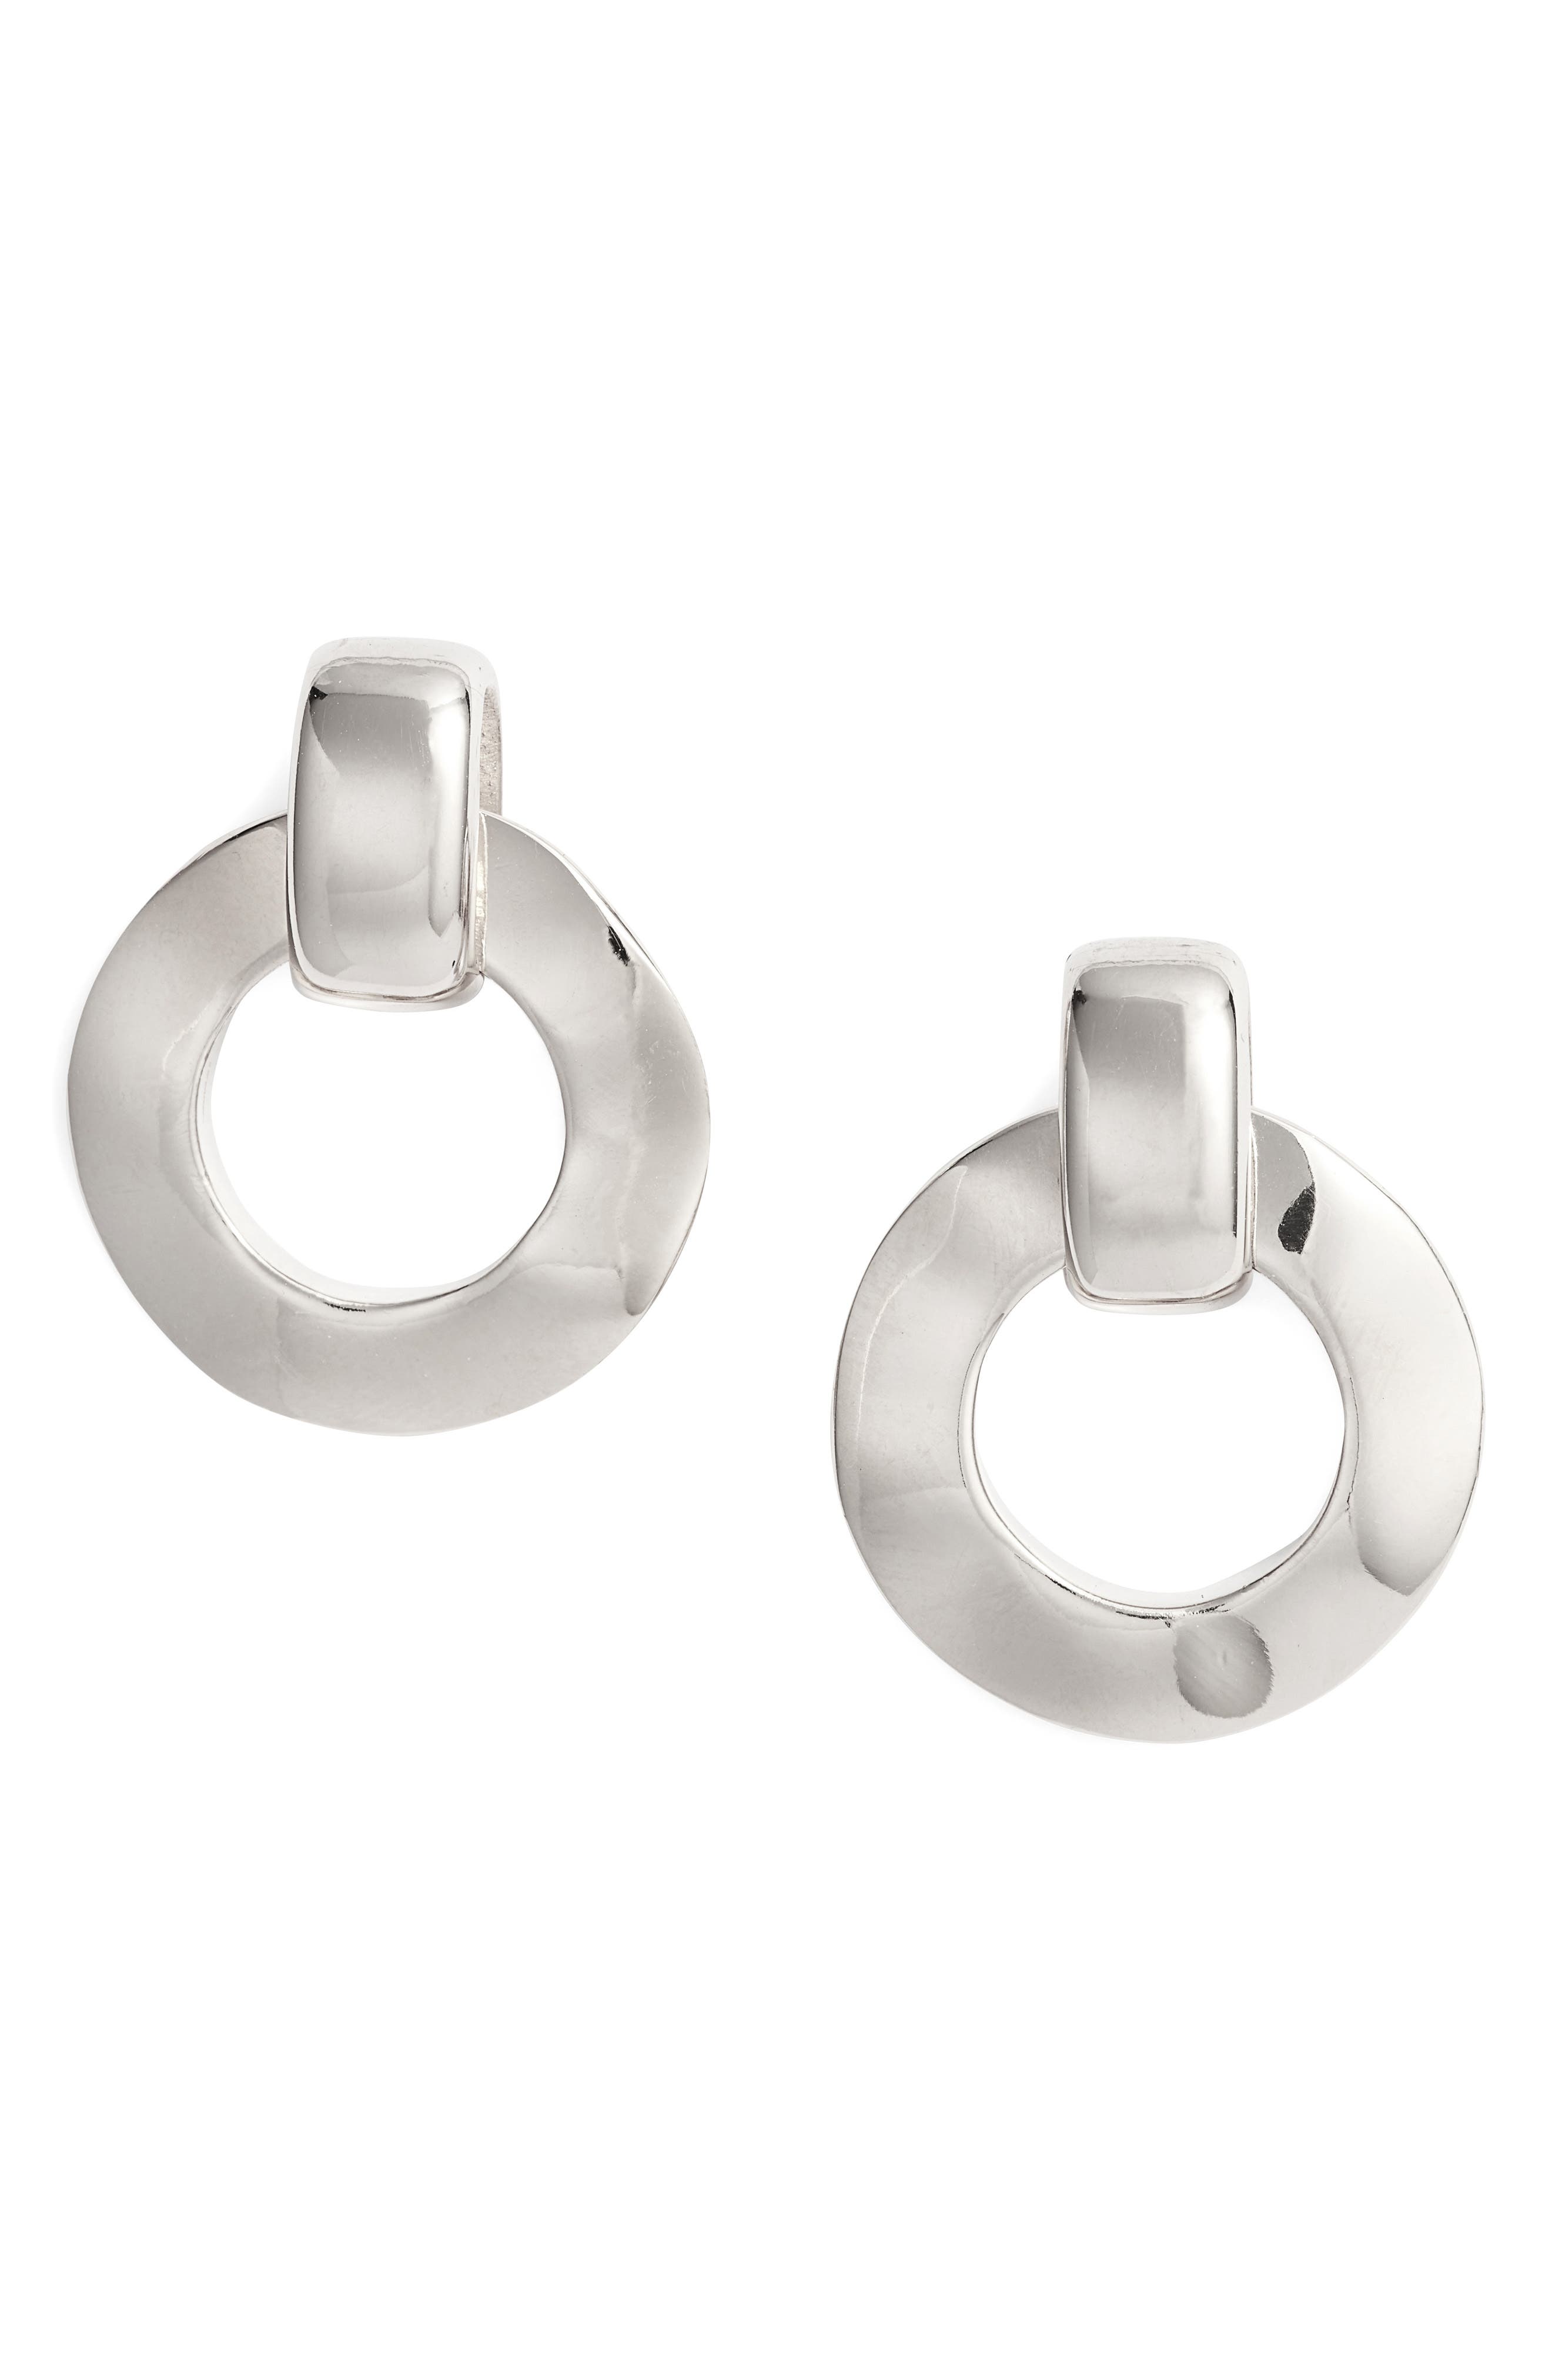 BIKO Aya Frontal Hoop Earrings in Silver at Nordstrom